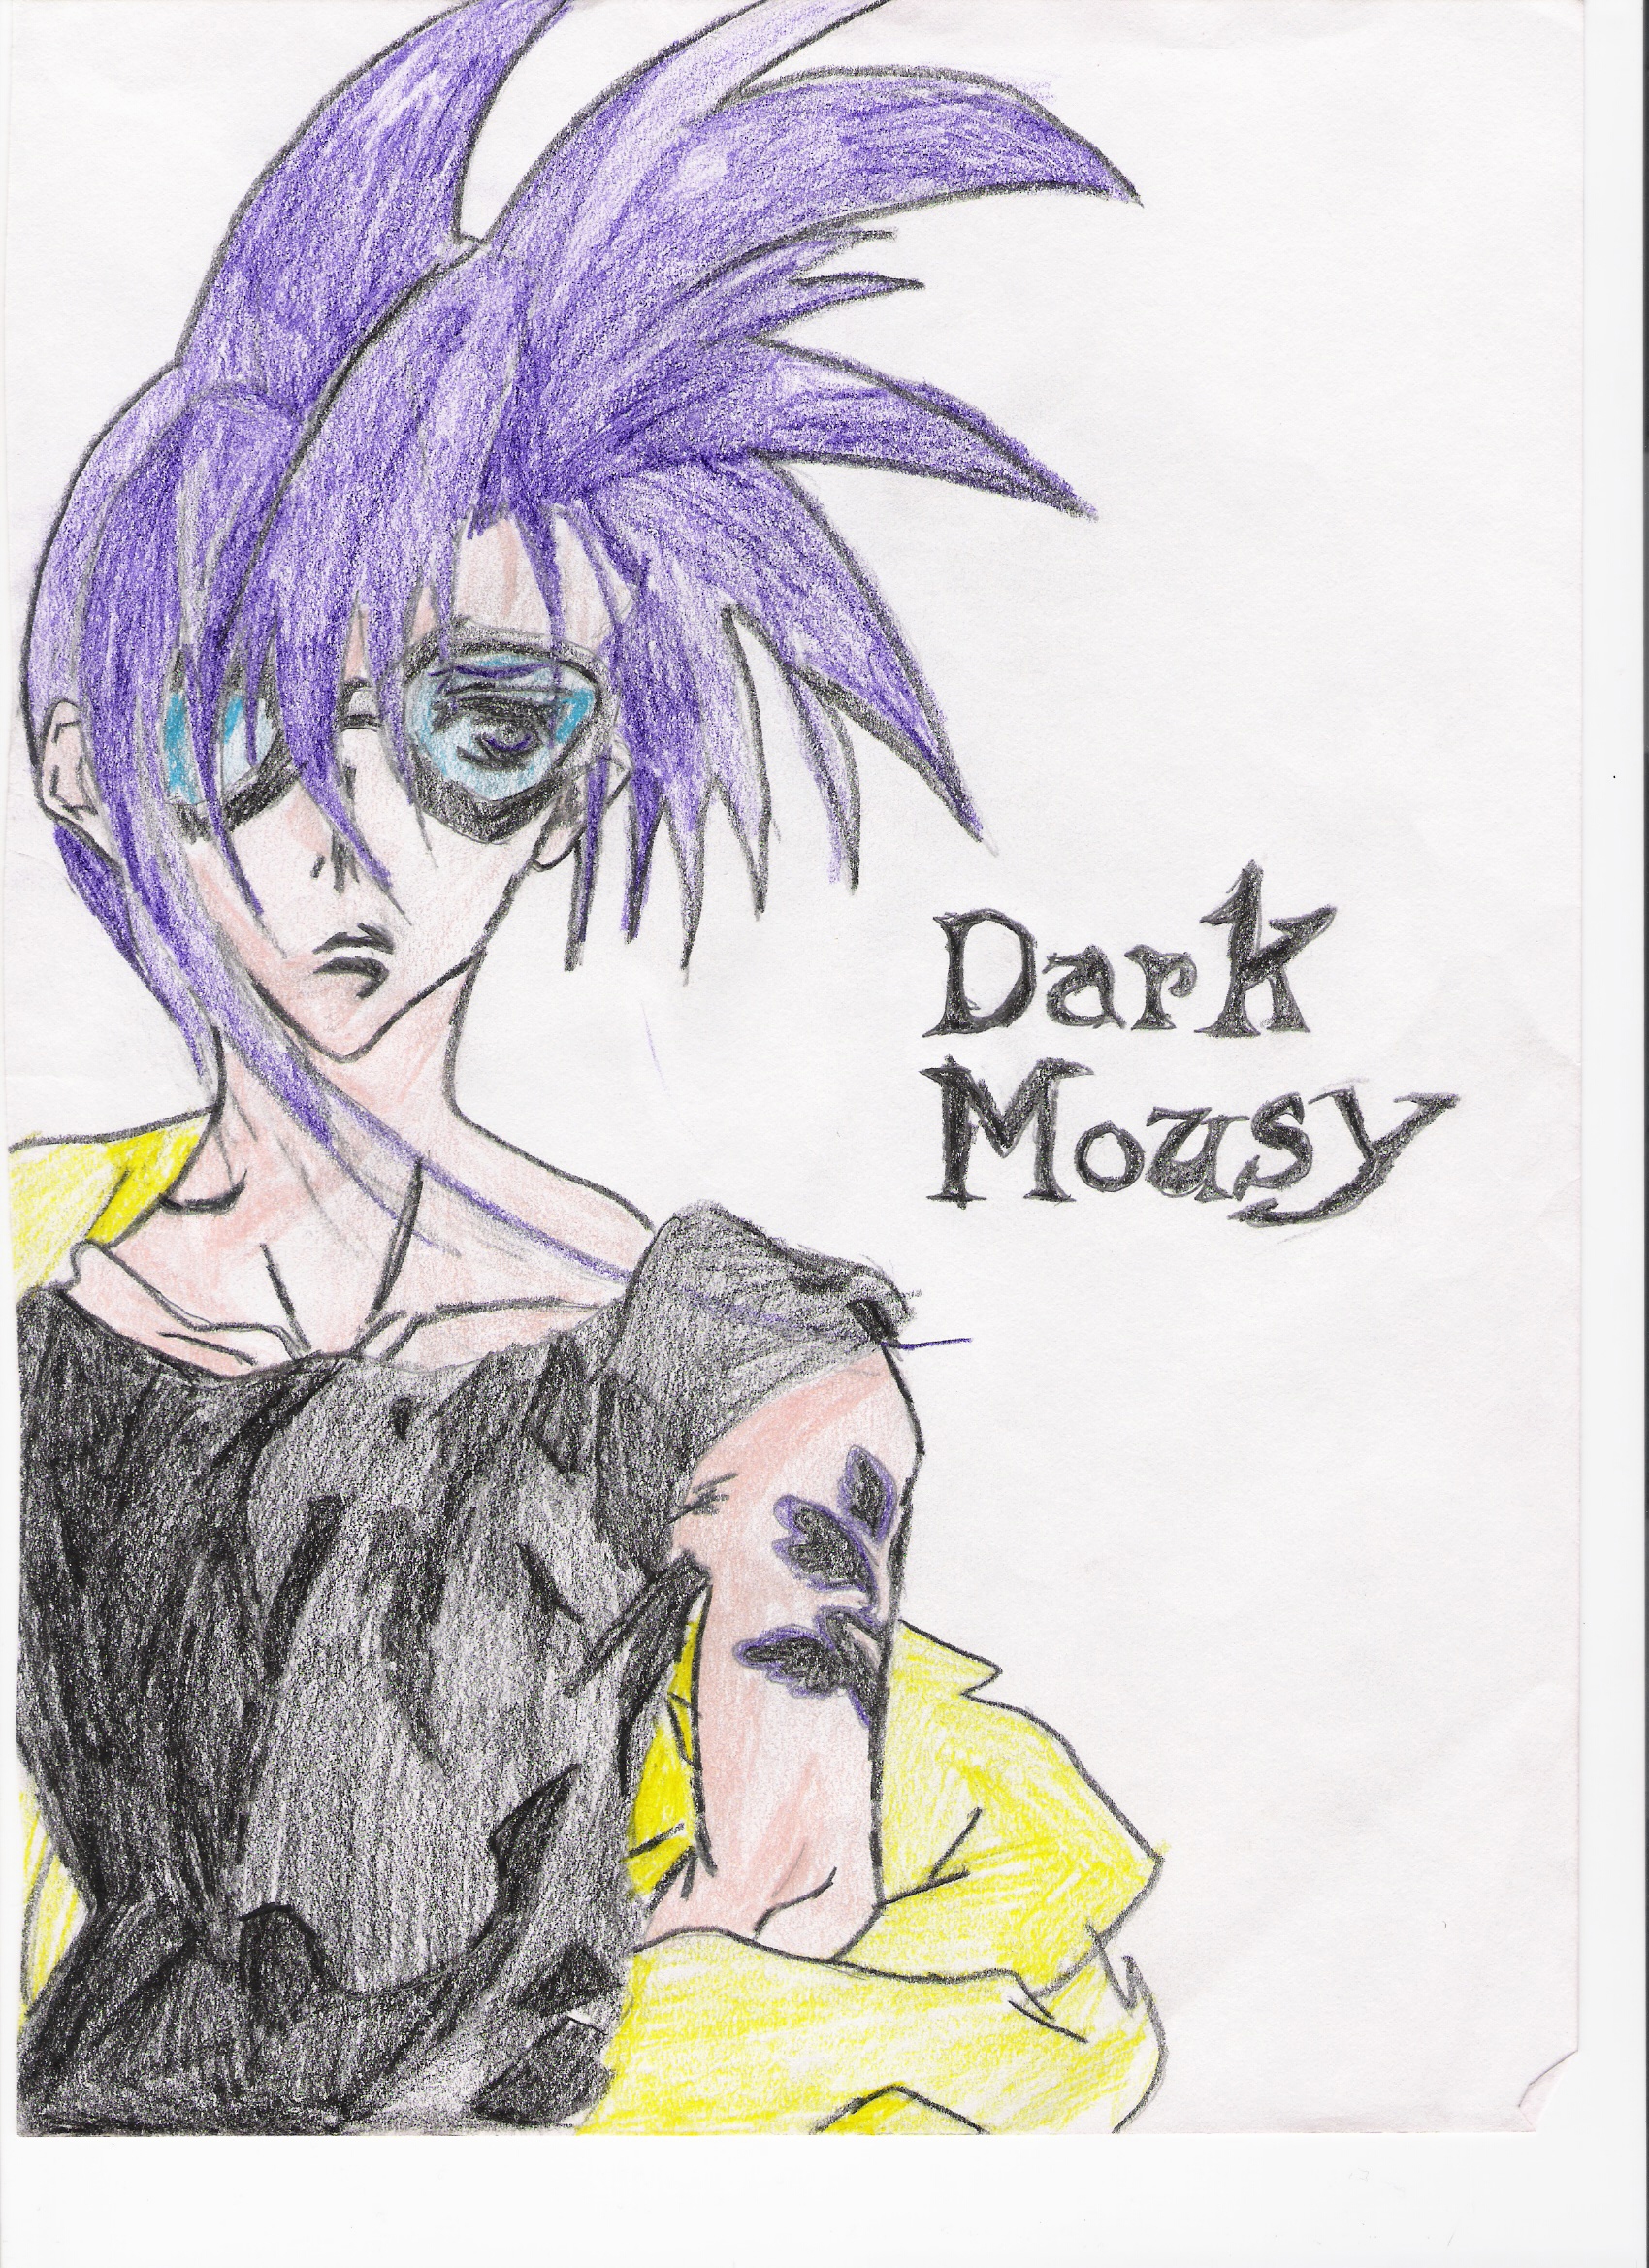 Dark Mousy has goggles by Knuxs_1_fan